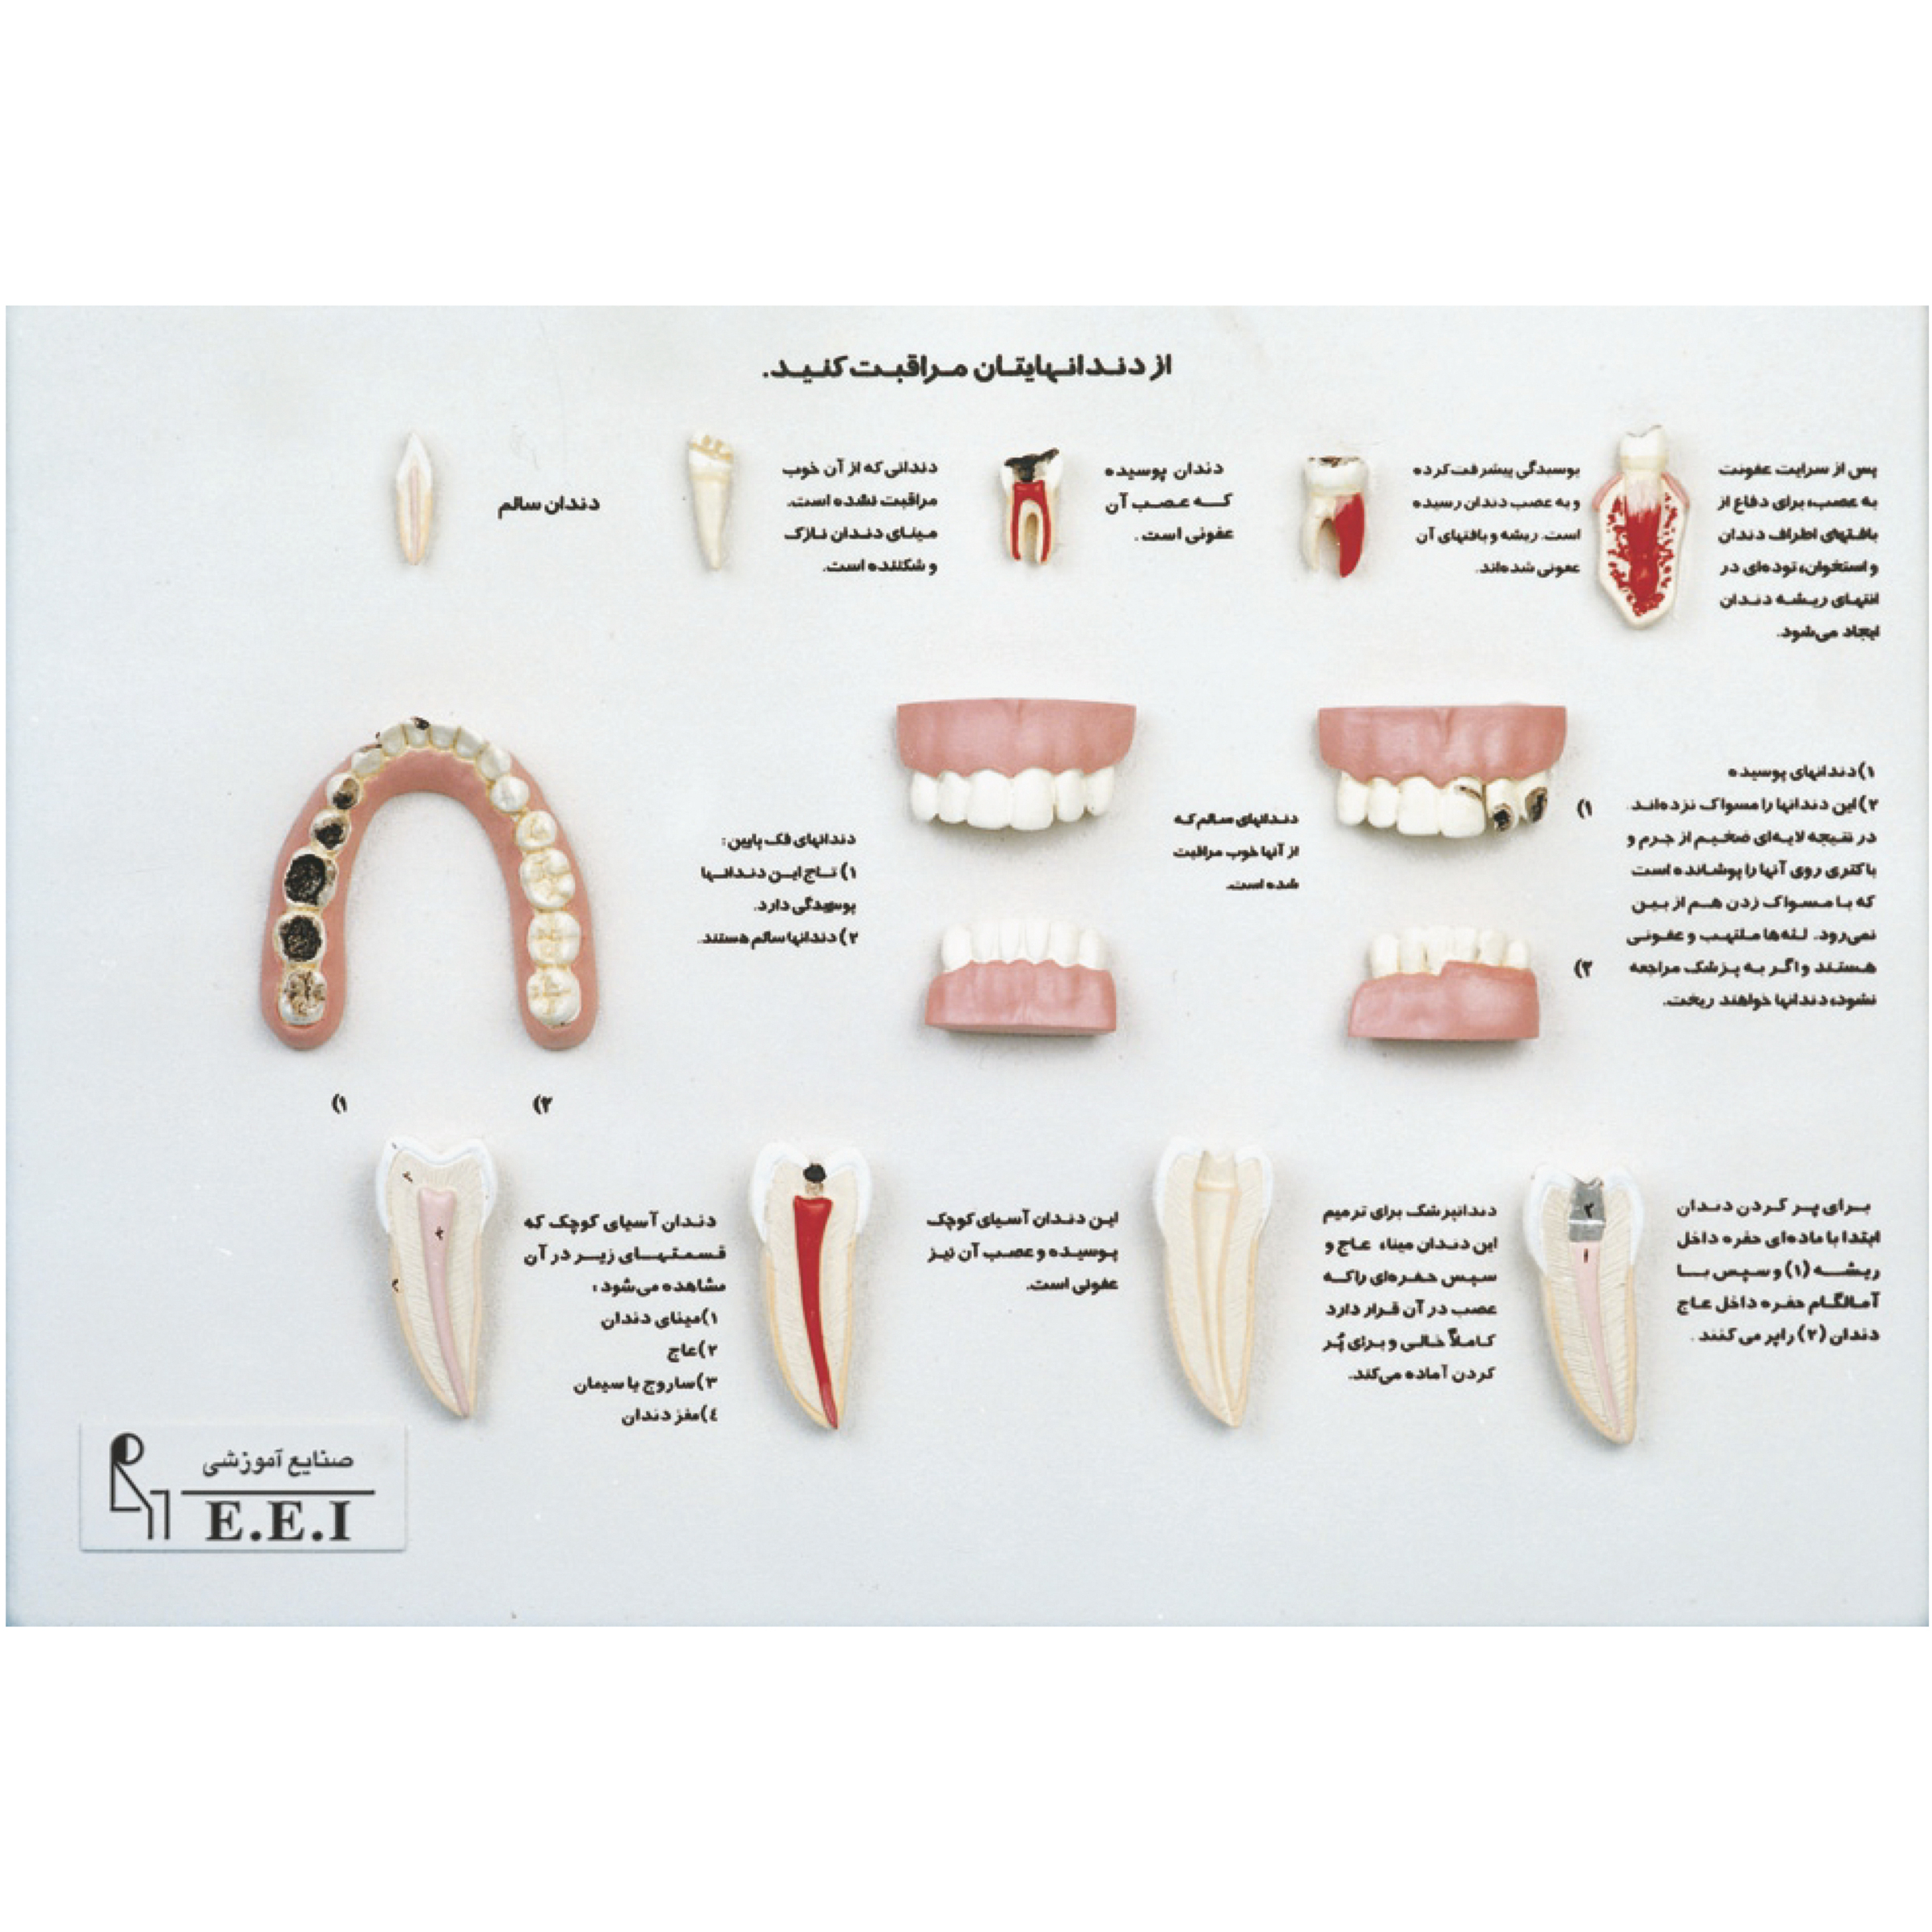 مدل مراقب دندان های خودباشید - مراقبت از دندان‌ها باعث می‌شود زندگی سالم، طولانی و بدون درد را تجربه کنیم. داشتن دندان‌های سالم بر زیبایی فرد بسیار حائز اهمیت است. در این مدل سعی شده با نمایش دندان‌های پوسیده و سالم در کنار یکدیگر اهمیت مراقبت از دندان‌ها نشان داده شود. برخی از دندان‌ها در اندازه طبیعی و برخی دیگر بزرگتر از انداز ...